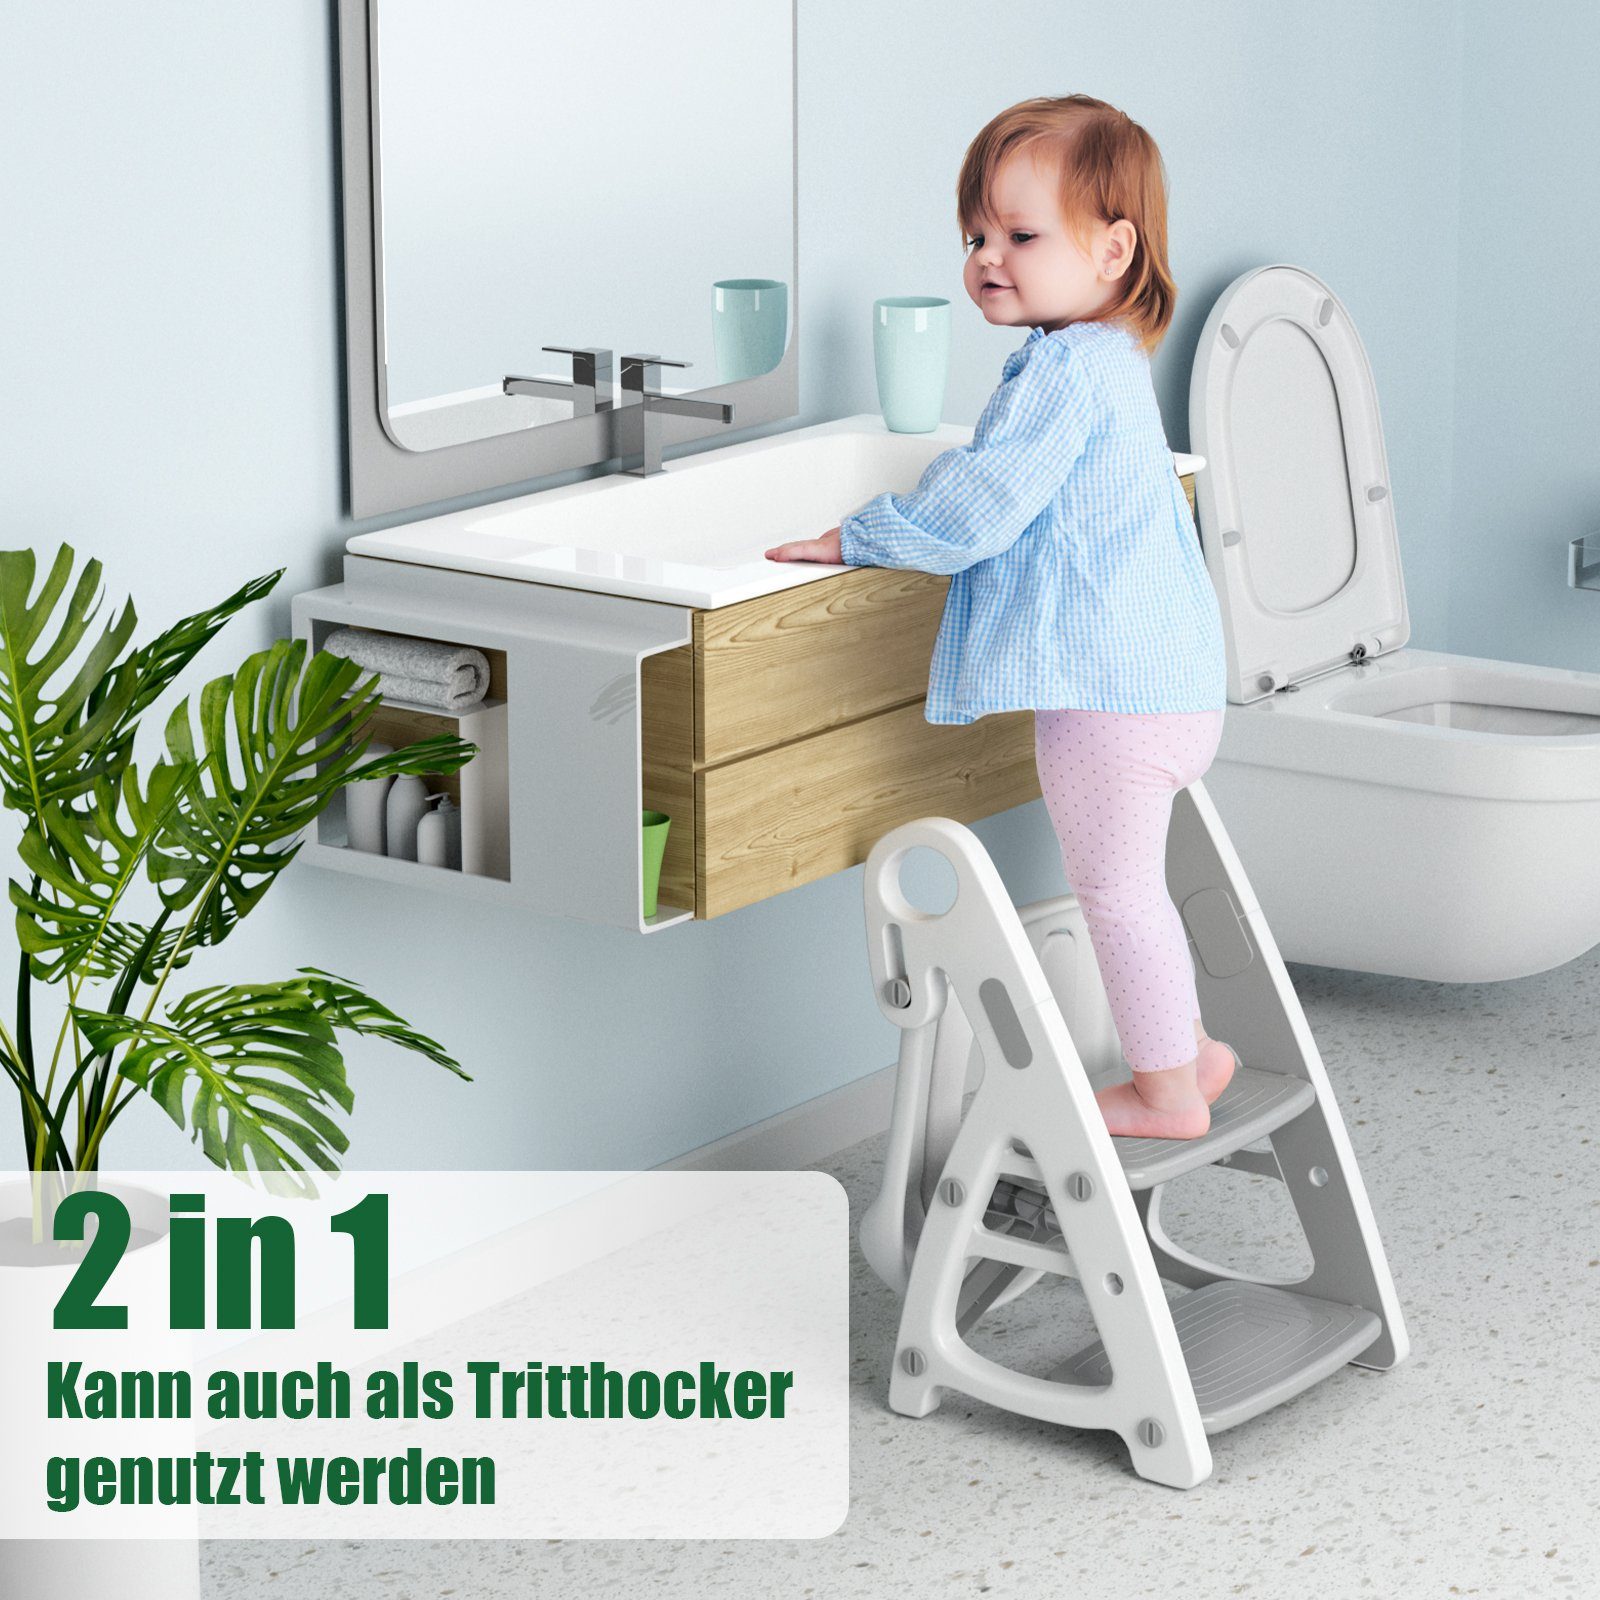 TLGREEN Toilettentrainer Toilettensitz Kinder Grau in Treppe, Tritthocker Toilettensitz mit Baby mit 2 1